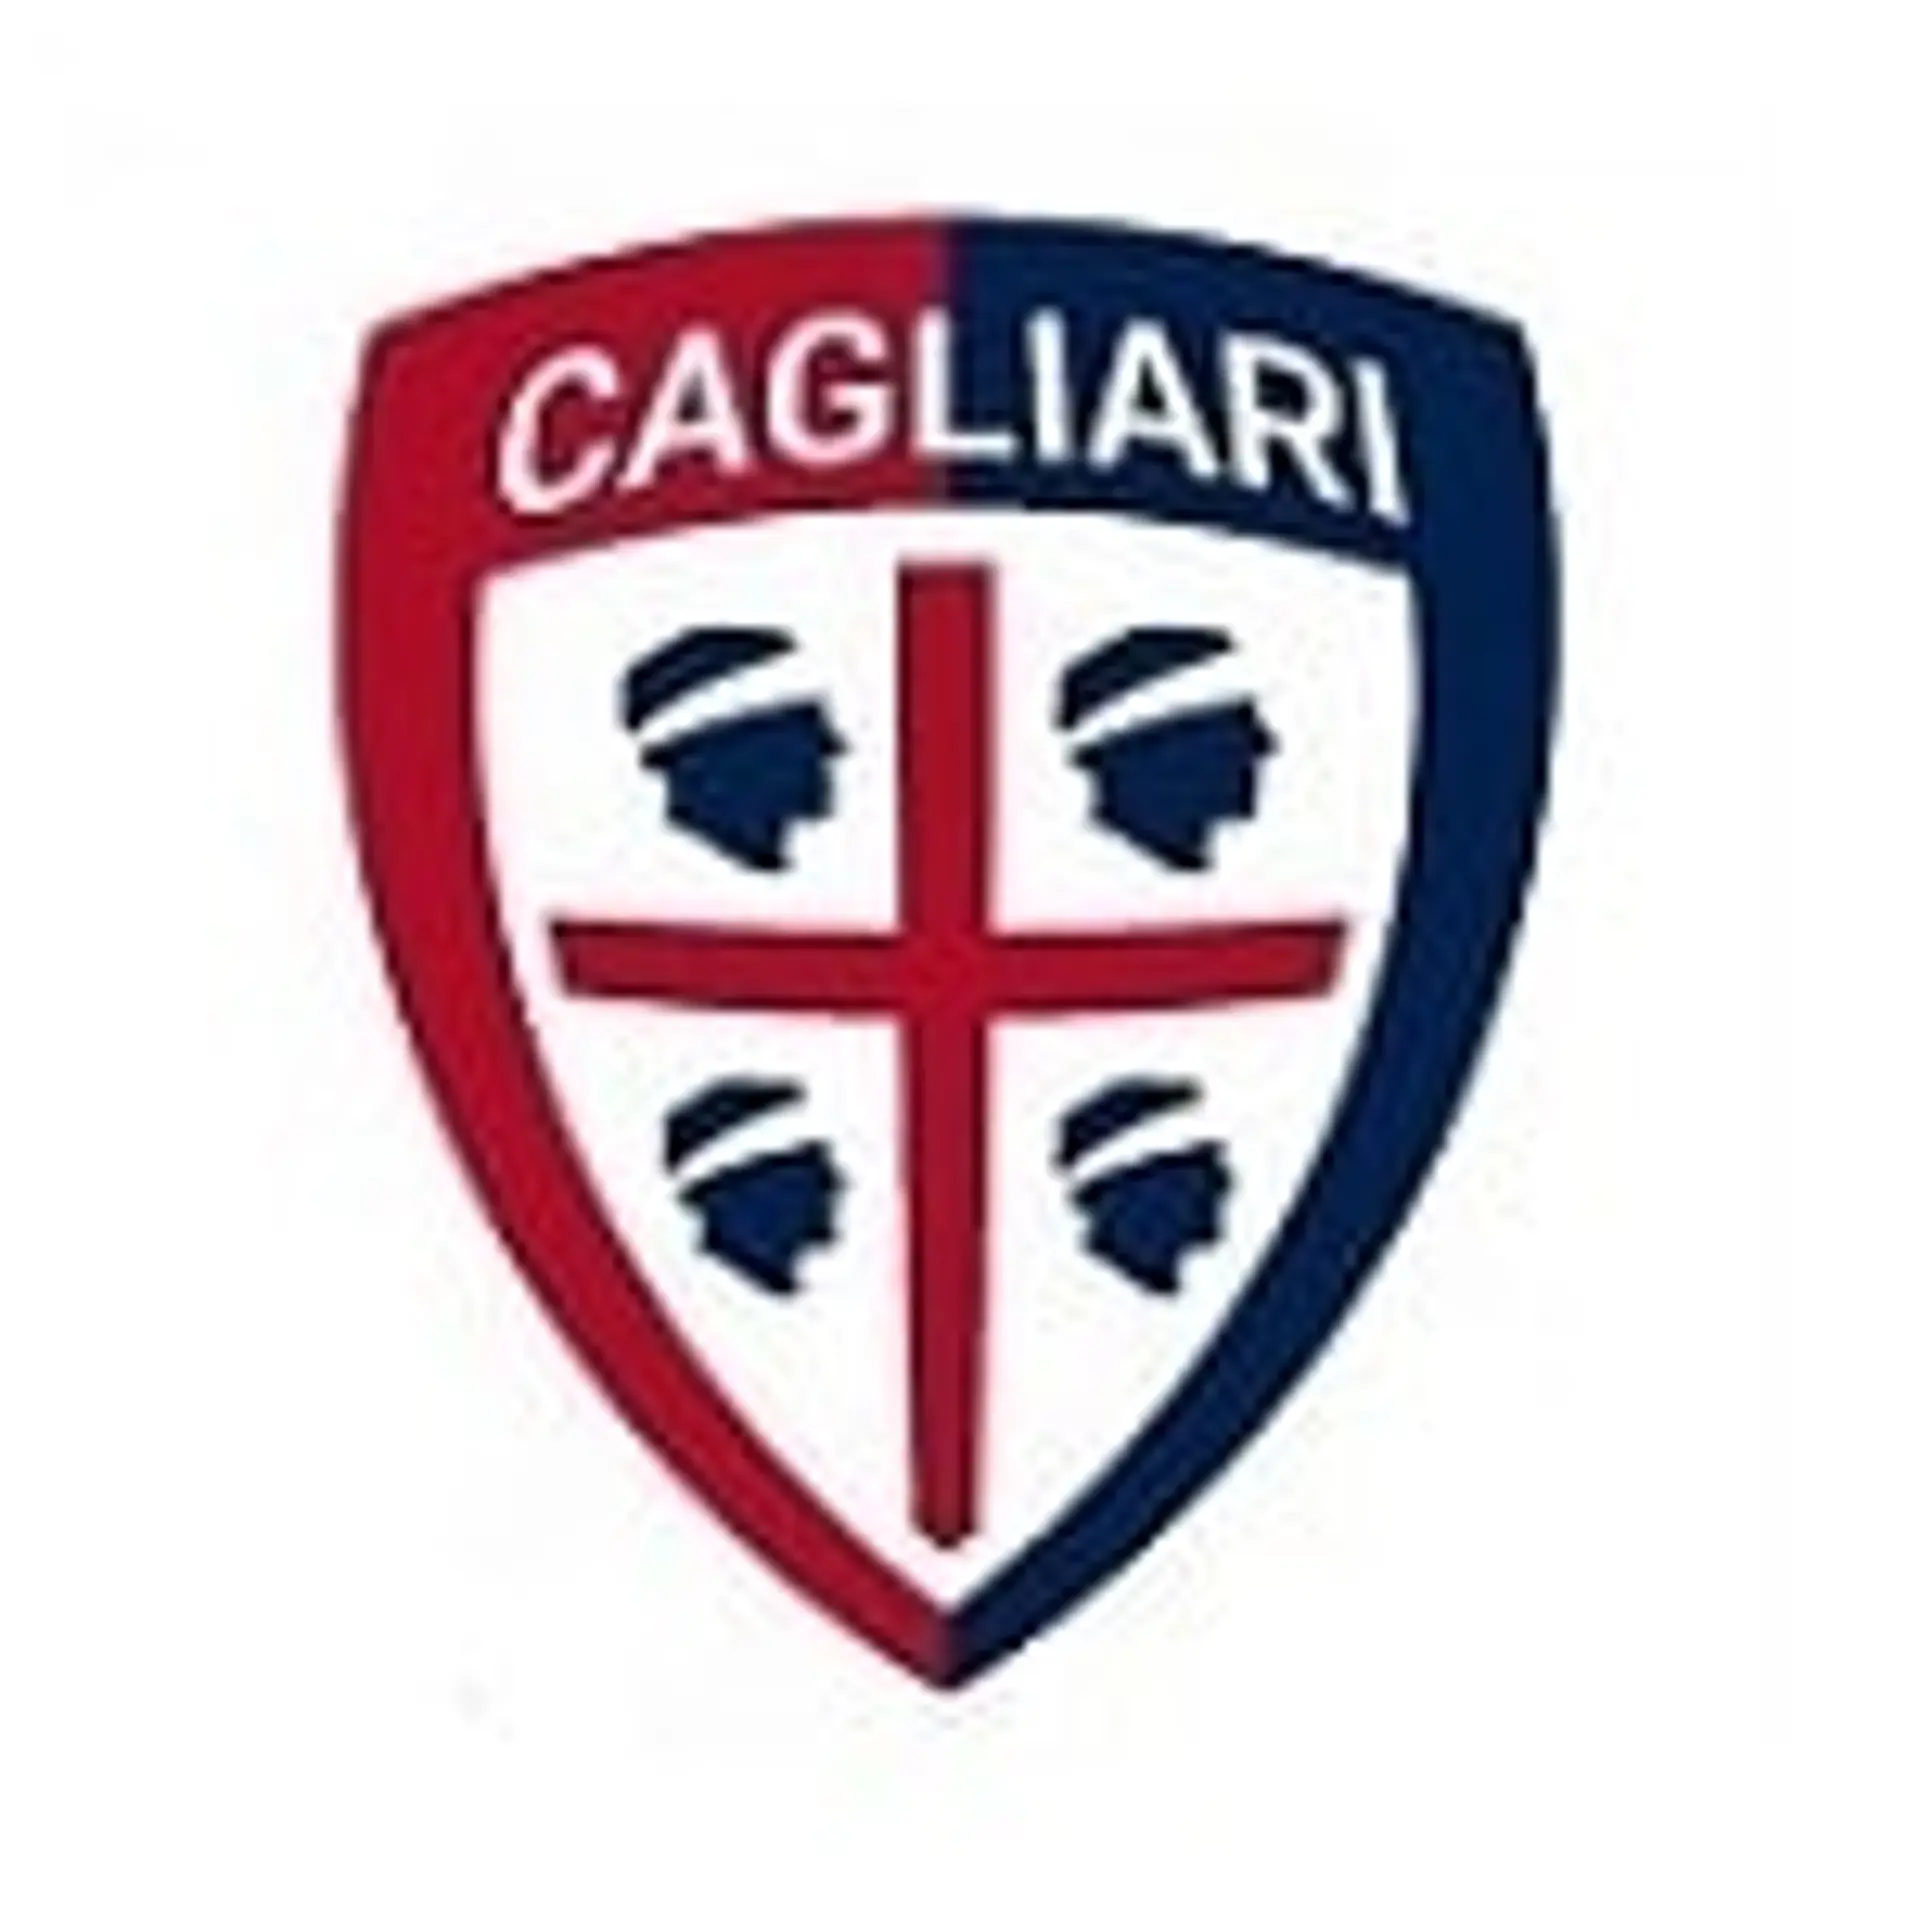 Cagliari Plantilla